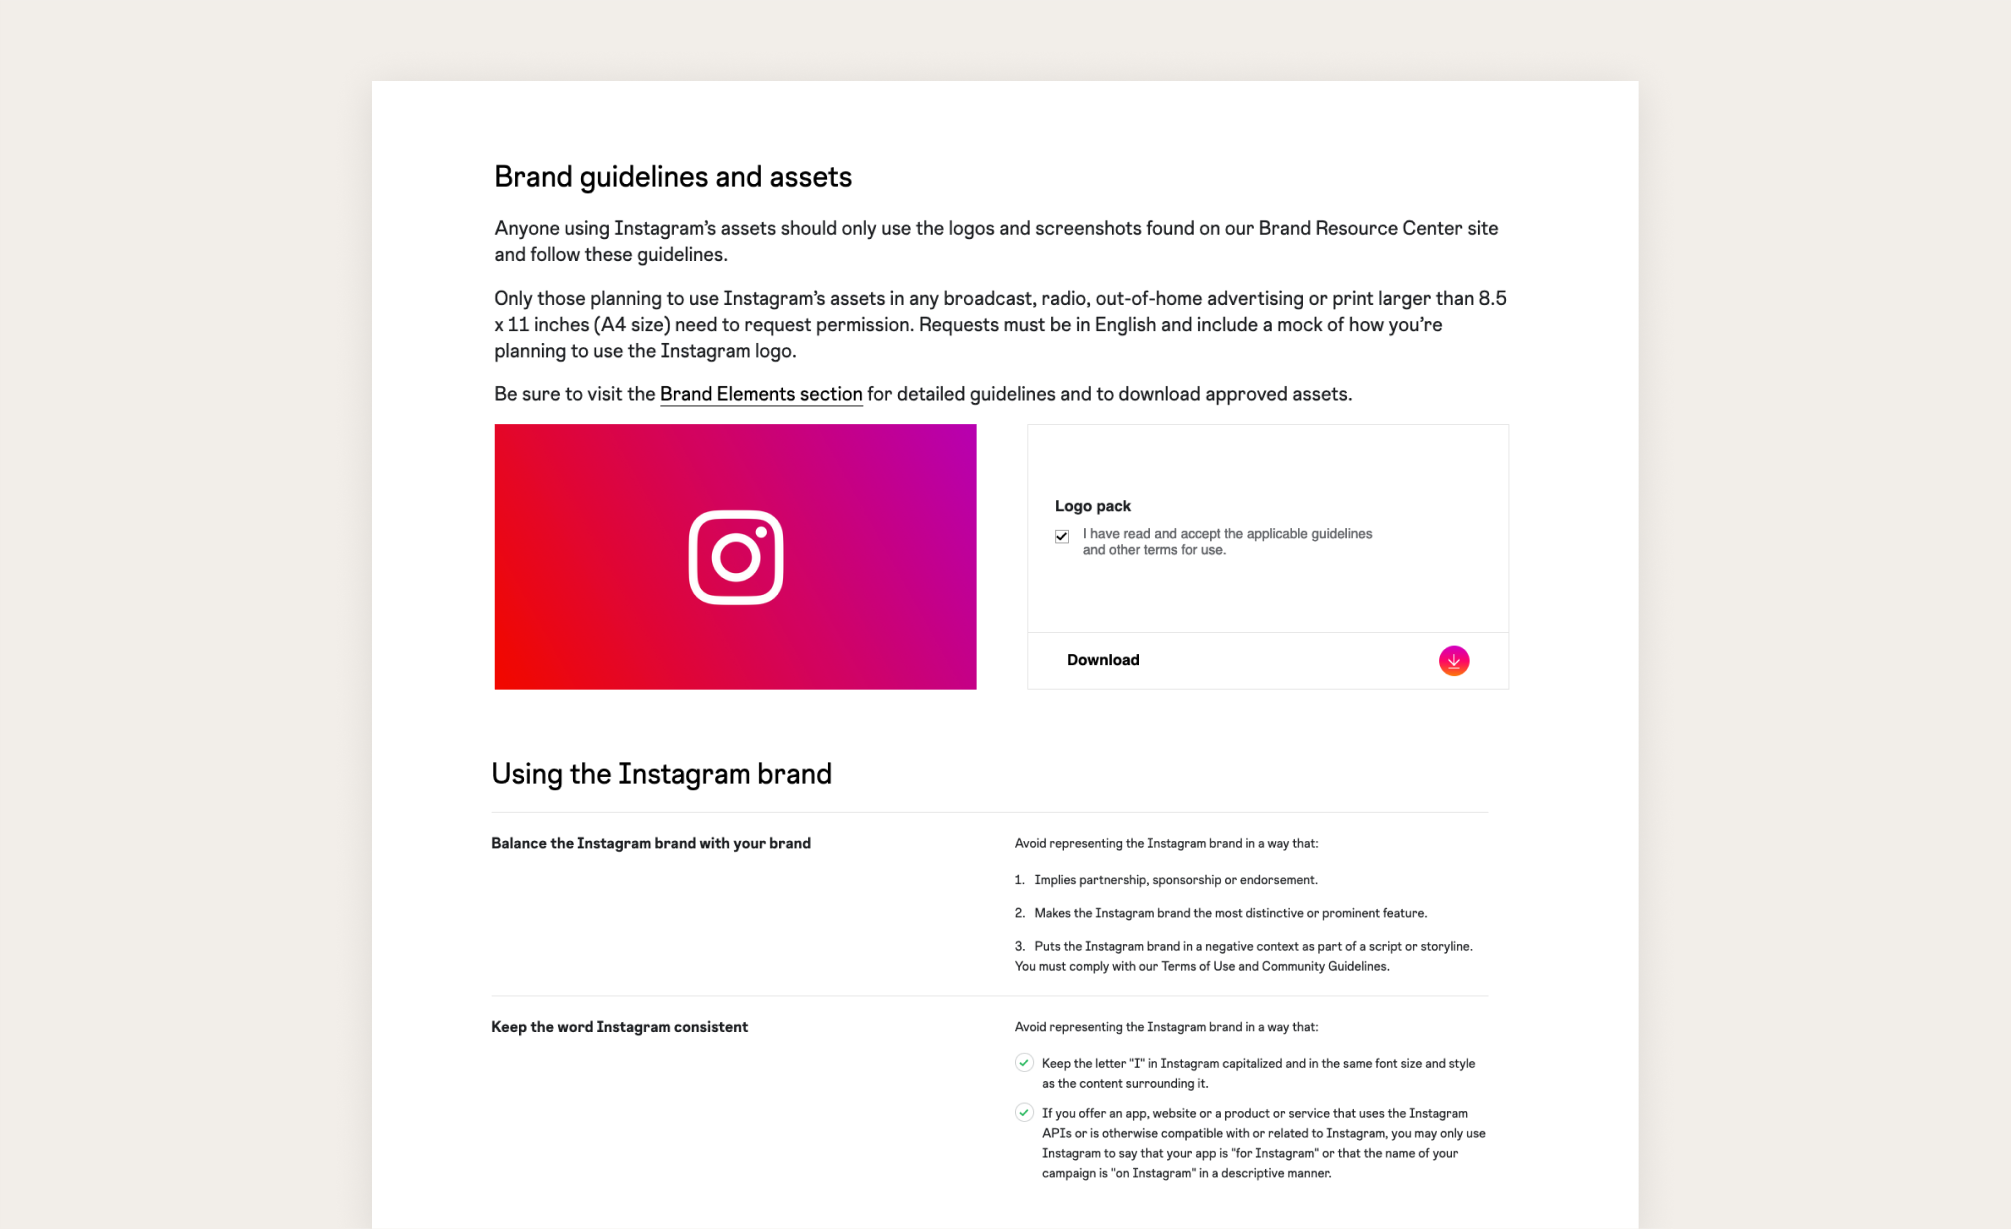 Fragment strony interentowej Instagram z wytycznymi prawnymi dotyczącymi użycia znaku. Na stronie znajduje się logo Instagram do pobrania oraz szczegółowe opisy dotyczace zasad korzystania ze znaku i nazwy marki.